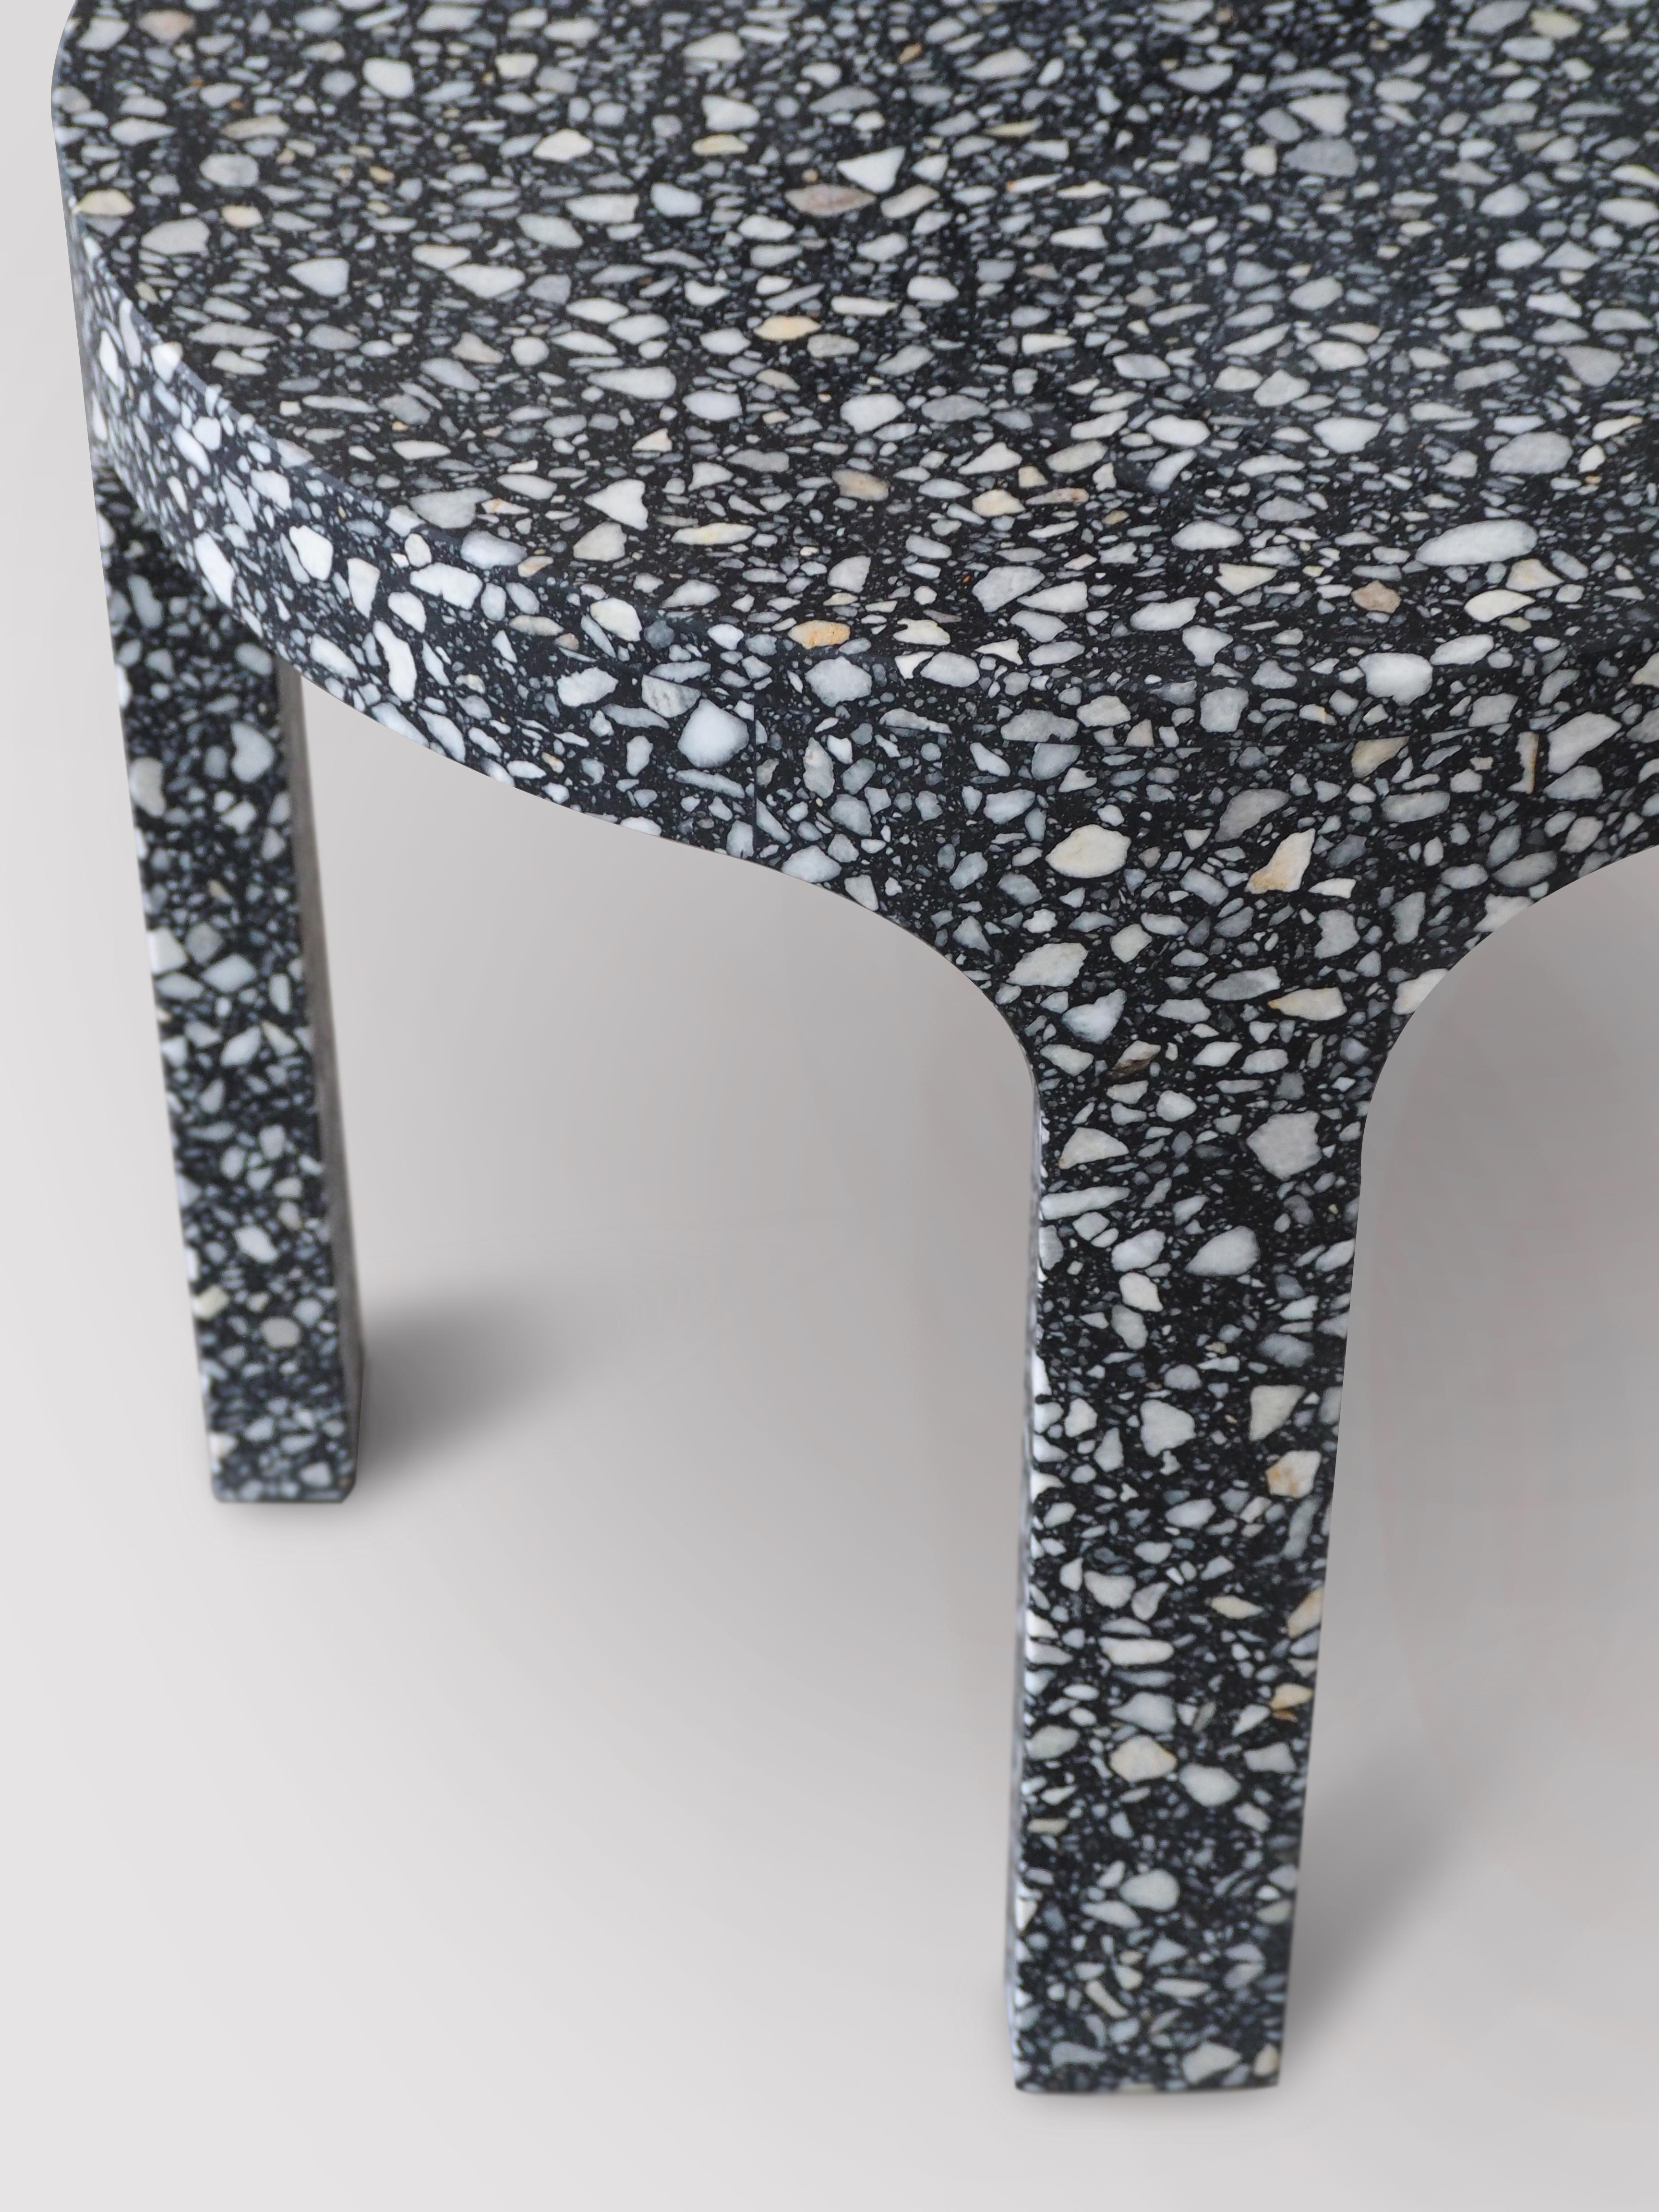 Loggia est une table d'appoint réalisée en marbre ou en résine terrazzo.
Conçu par Matteo Leorato
Ce matériau, traditionnellement utilisé à la Renaissance pour le pavage des palais nobles, est ici réinterprété dans la troisième dimension, sculpté